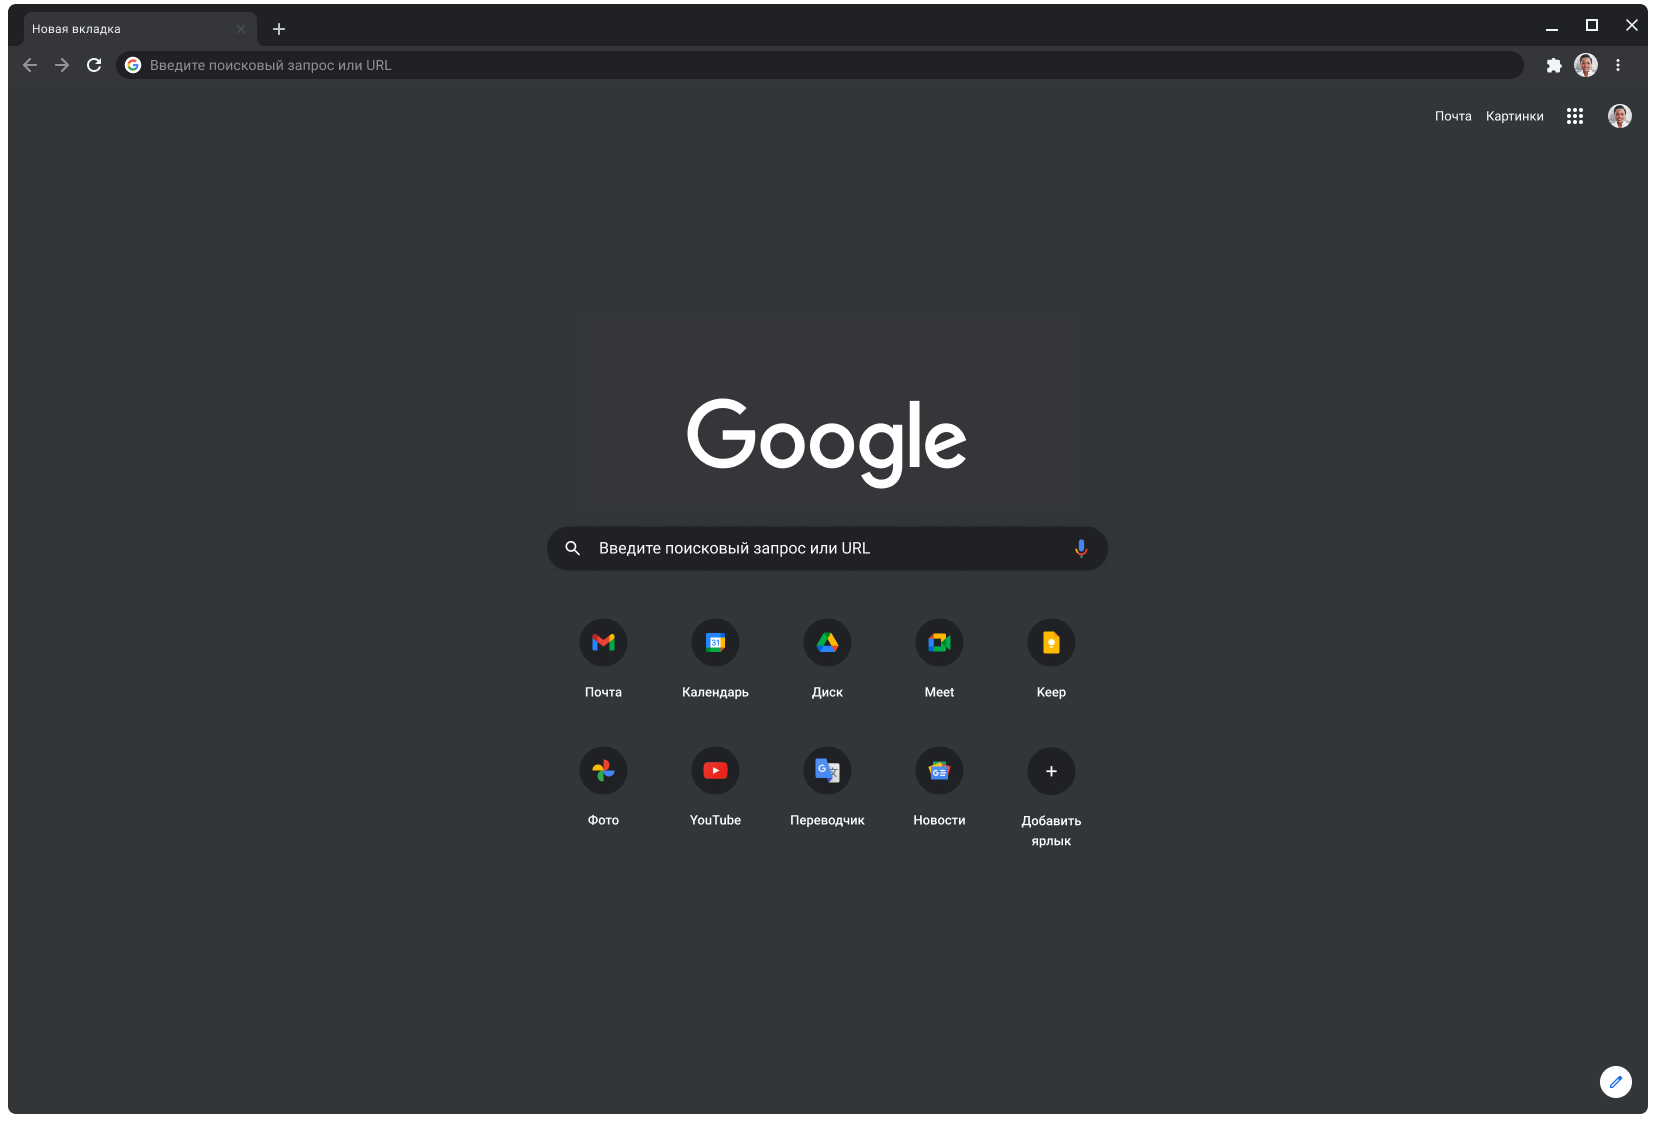 Окно браузера Chrome с установленной тёмной темой, в котором открыта страница сайта google.com.